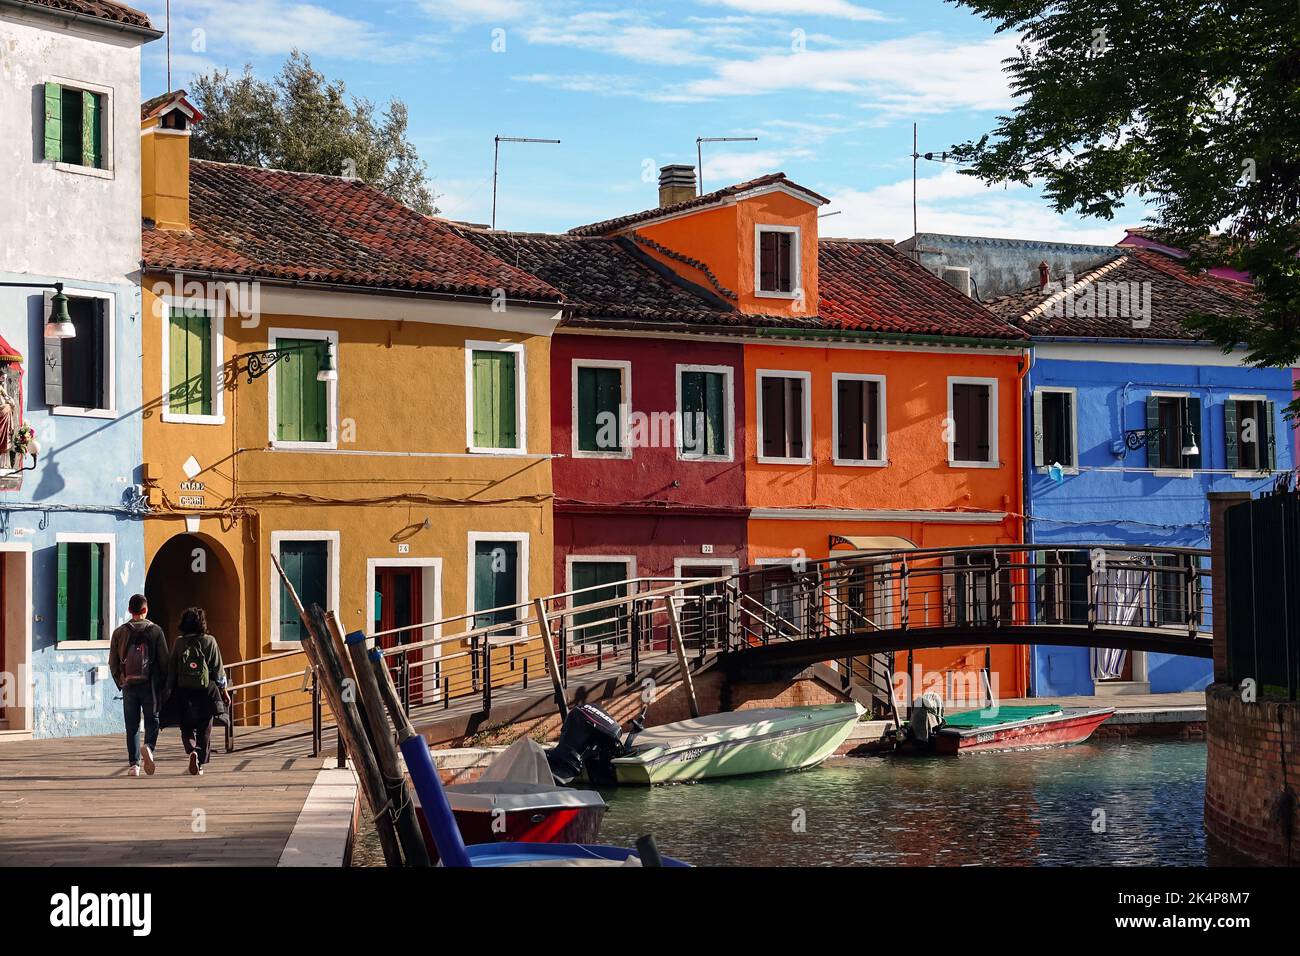 Die Insel Burano. Burano ist eine der Inseln Venedigs, die für ihre bunten Häuser bekannt ist. Burano, Venedig - Oktober 2022 Stockfoto